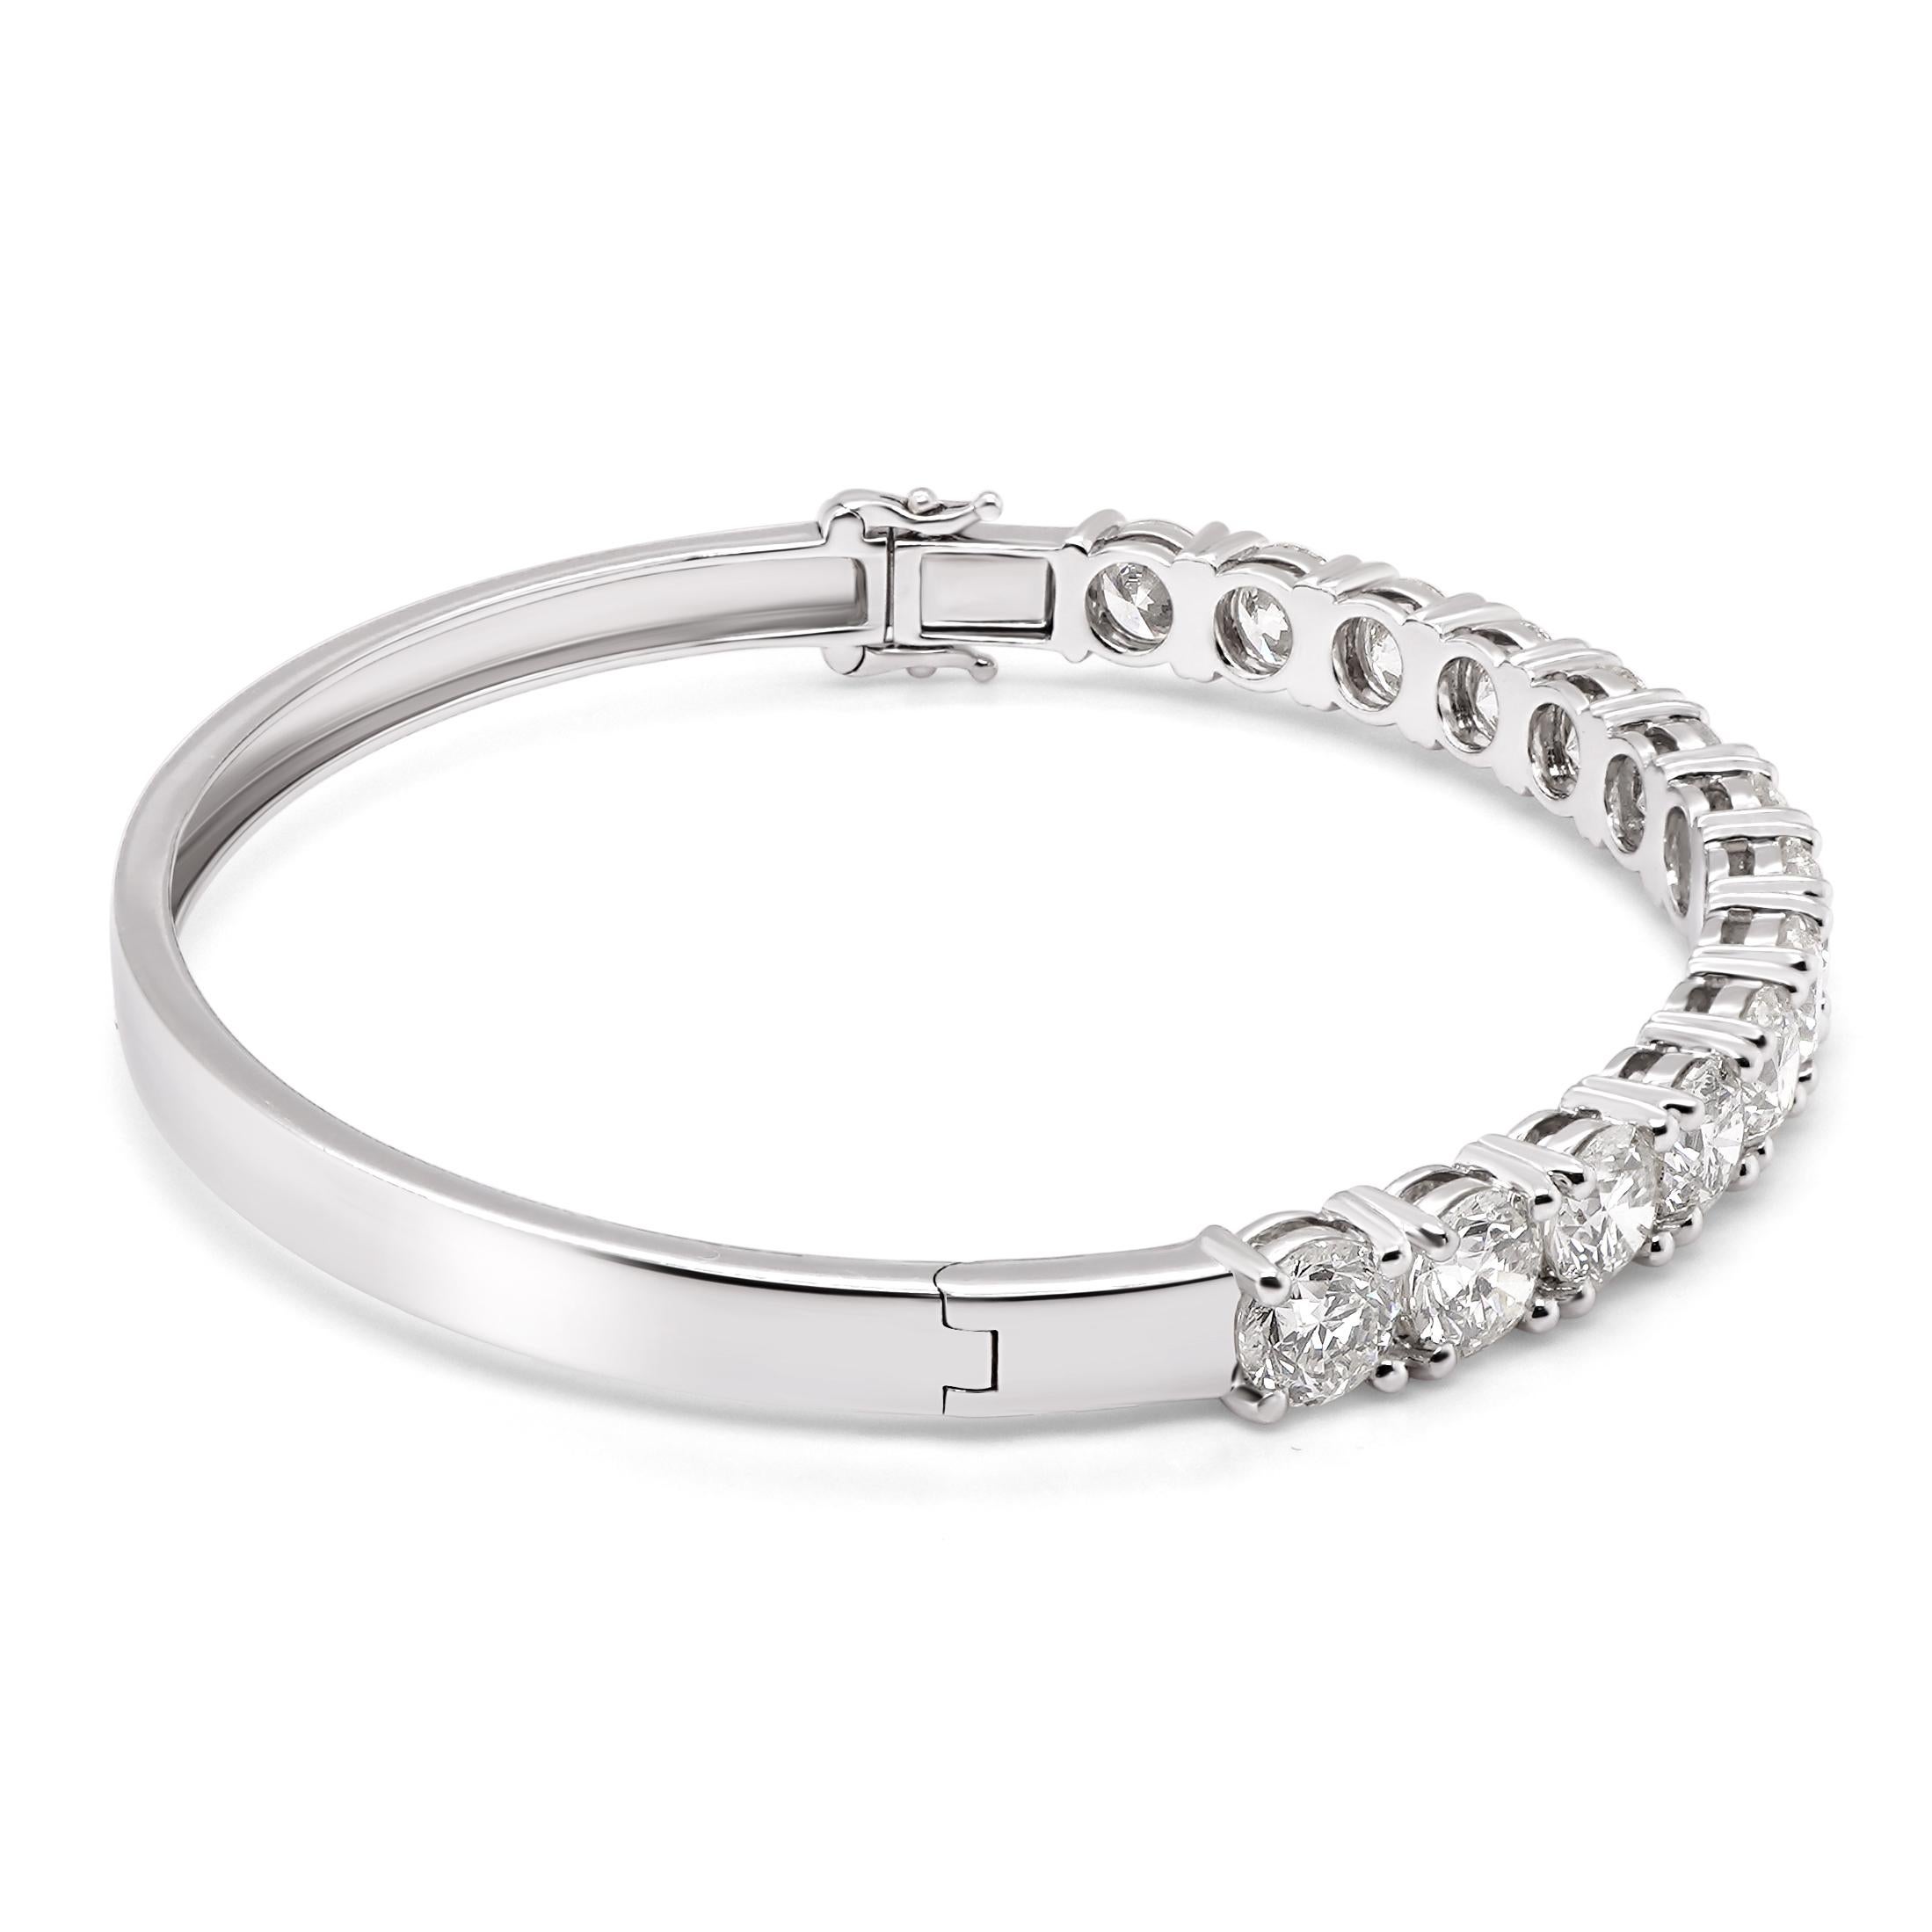 Ce bracelet classique est serti de 7,44 carats de diamants ronds blancs et brillants. Un total de 14 diamants ronds blancs sont sertis dans ce bracelet scintillant. Les détails du diamant sont mentionnés ci-dessous

Couleur : GH
Clarté : Vs

